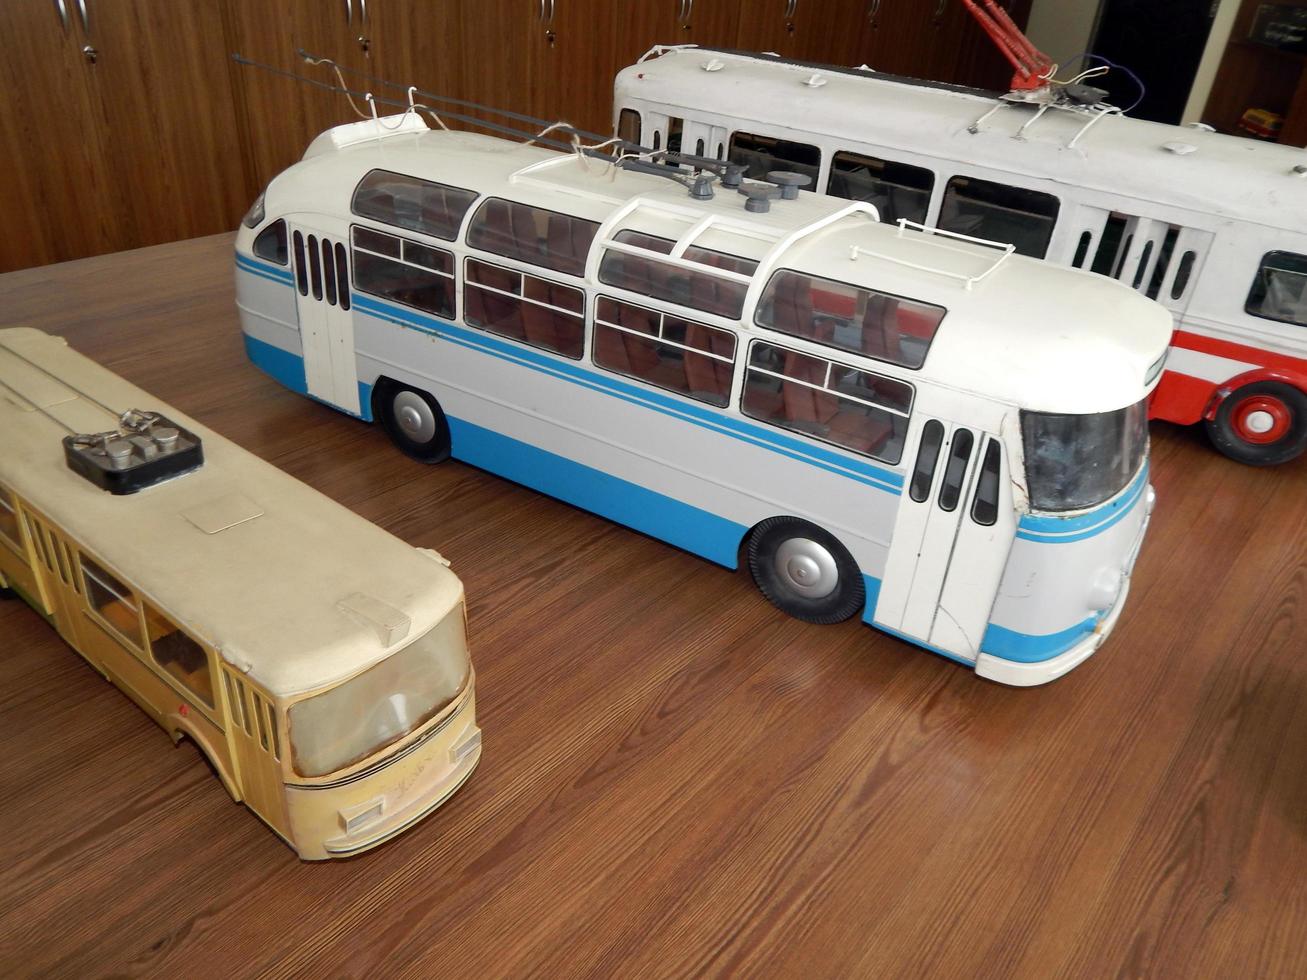 modelli di filobus, modelli di trasporto elettrico urbano foto